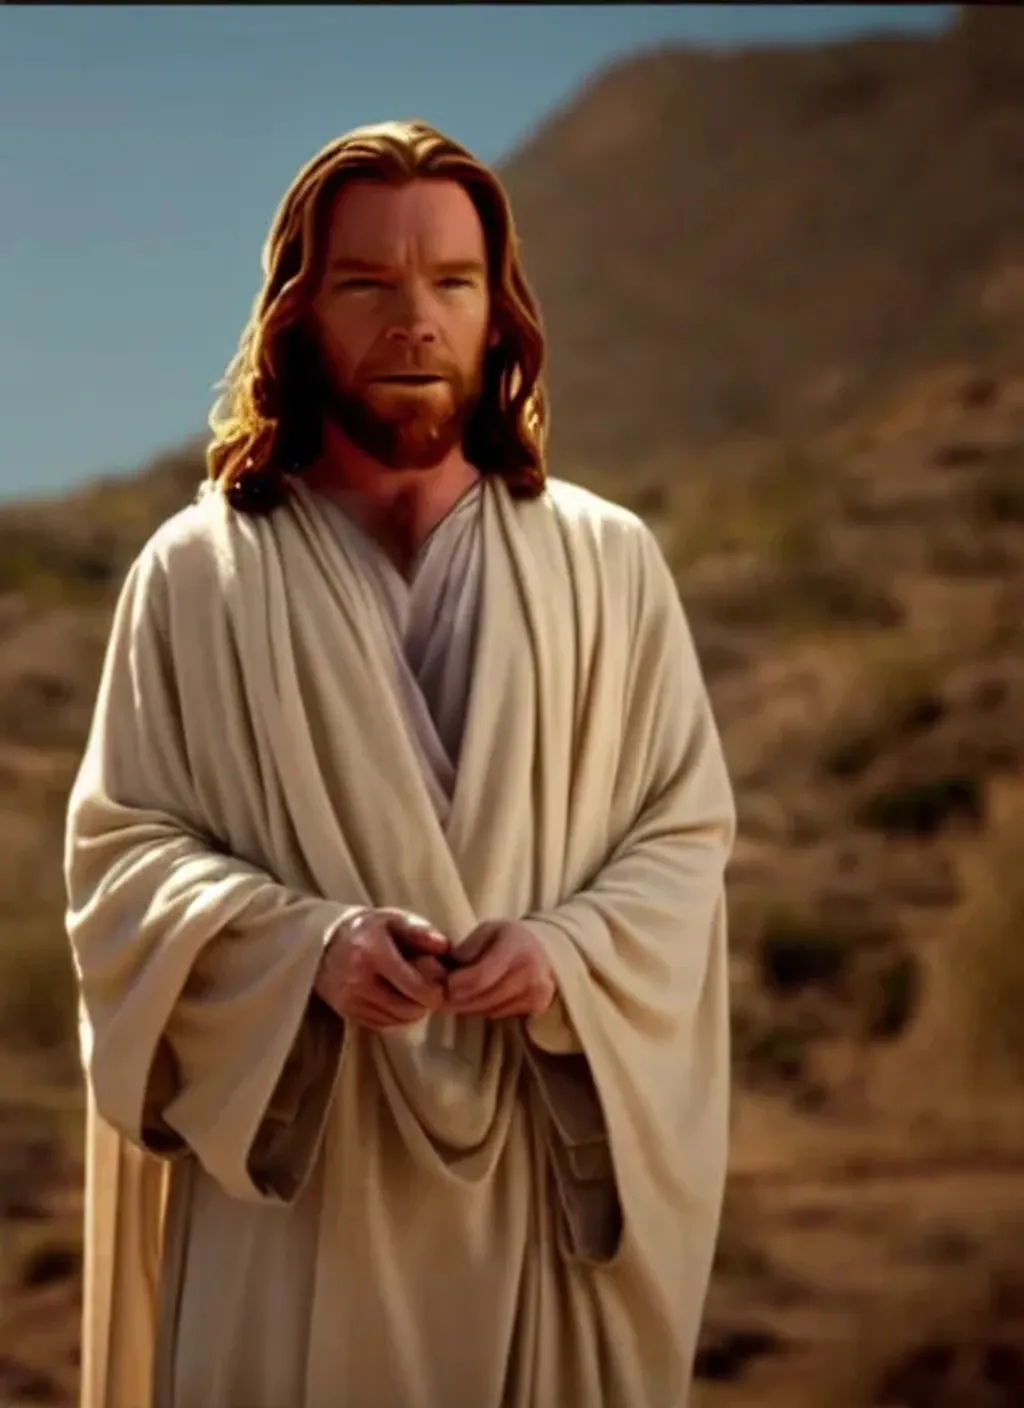 Prompt: A movie screenshot of Ewan McGregor as Jesus